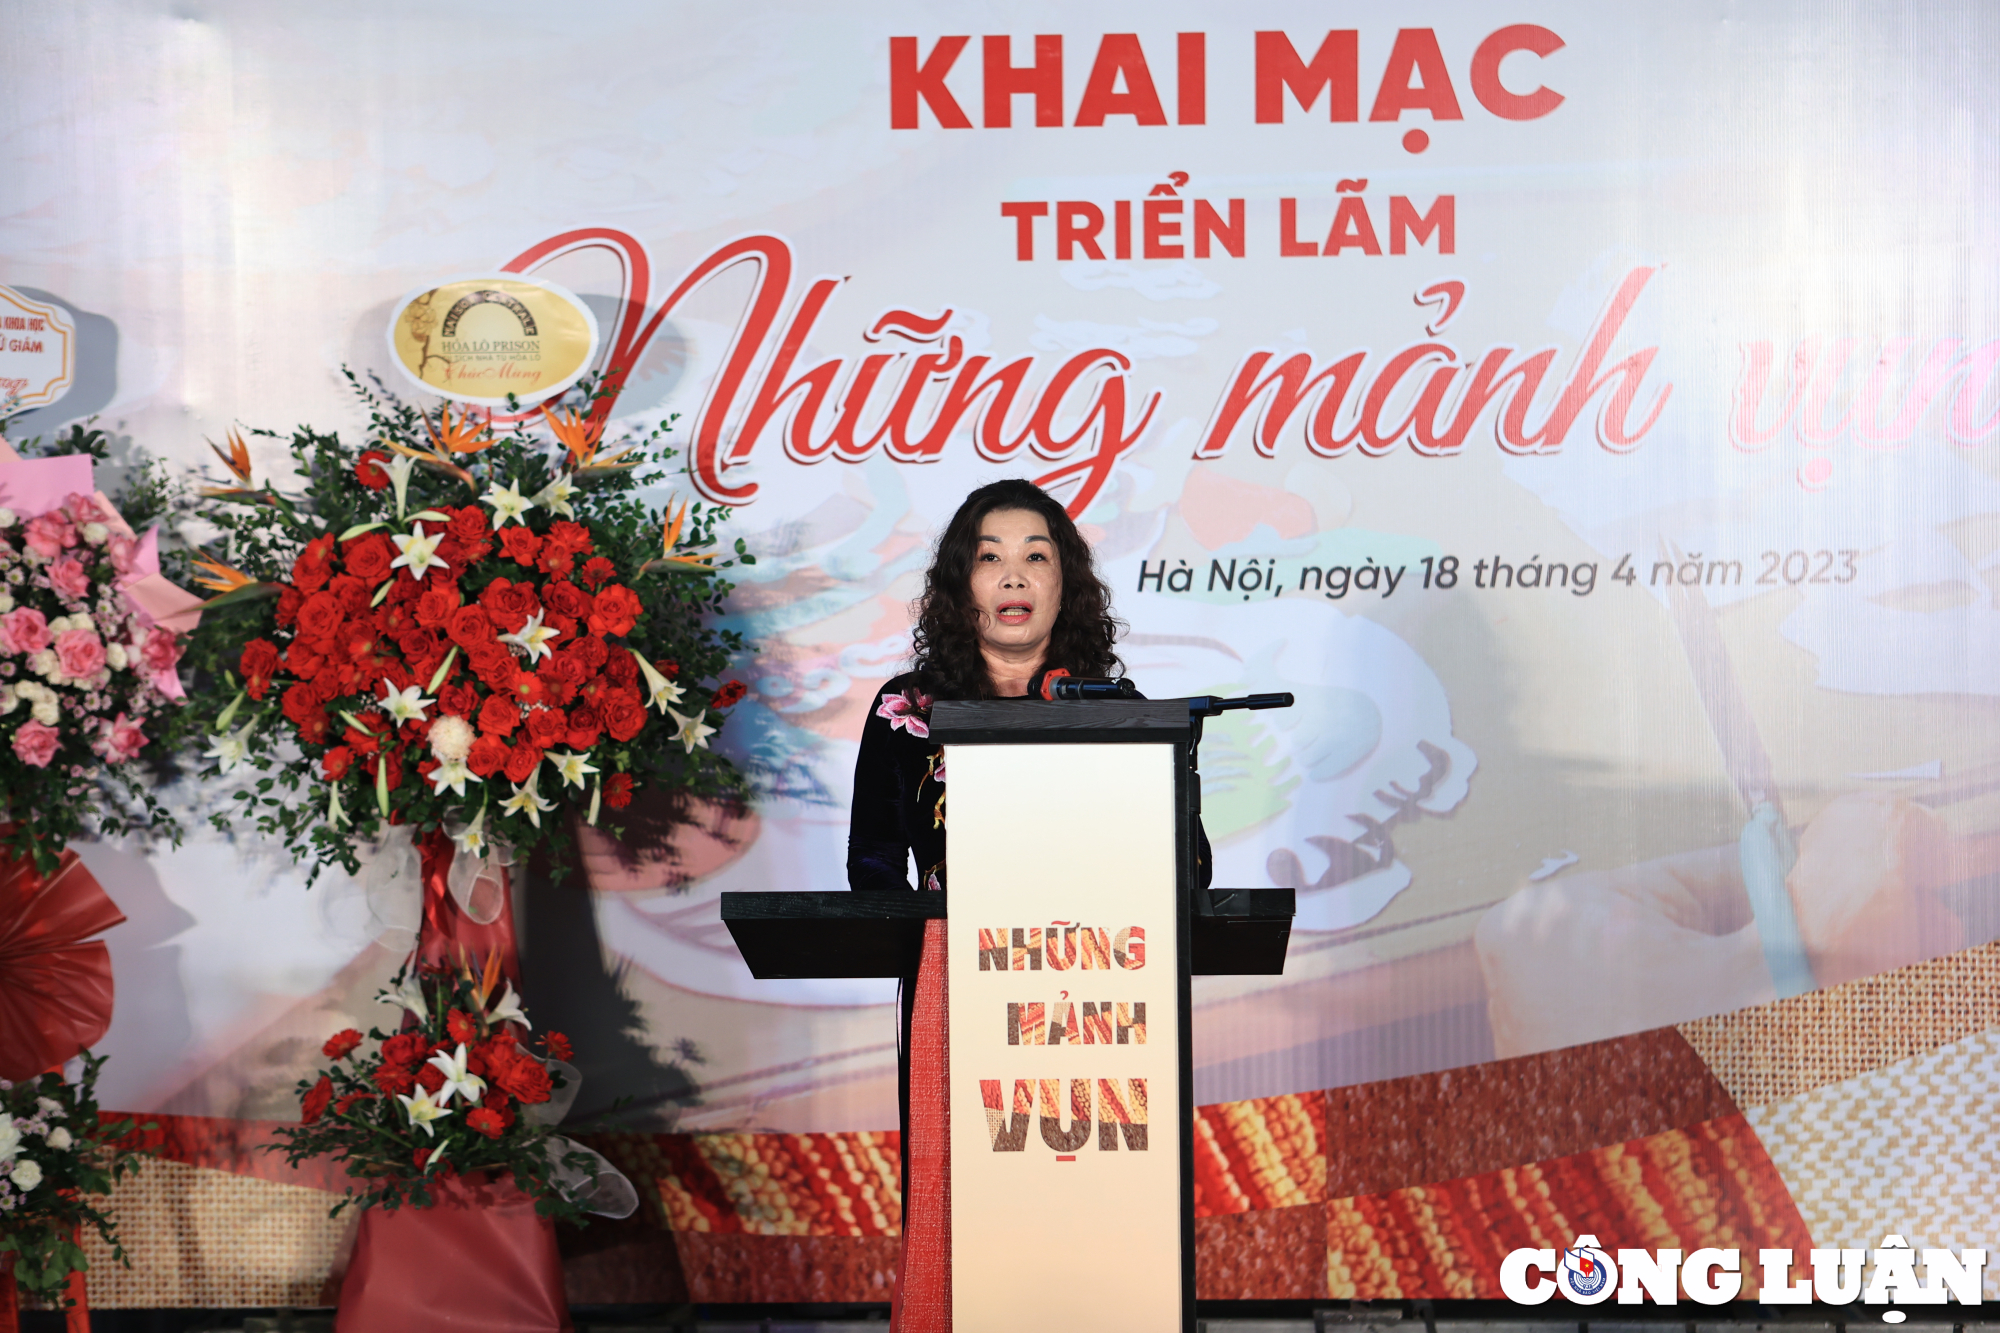 Bà Trần Thị Vân Anh, Phó giám đốc Sở Văn hóa và Thể thao Hà Nội phát biểu khai mạc triển lãm "Những mảnh vụn".